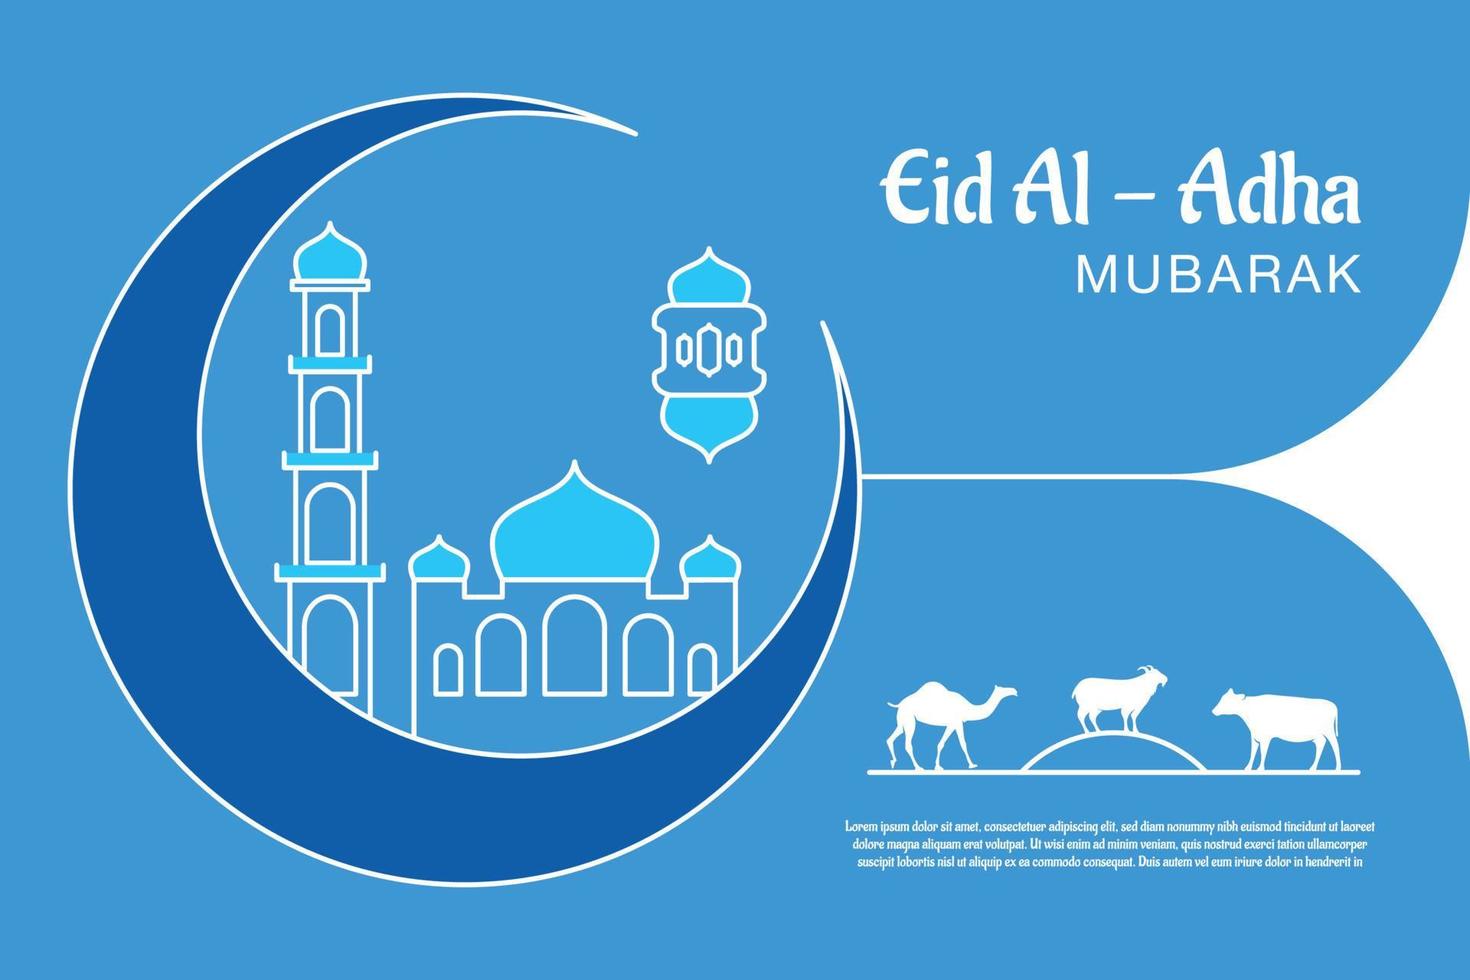 eid mubarak viering groet kaart sjabloon. feestelijk ontwerp voor moslim festival eid al adha met geit, silhouet van moskee, lantaarns en halve maan. vector illustratie.